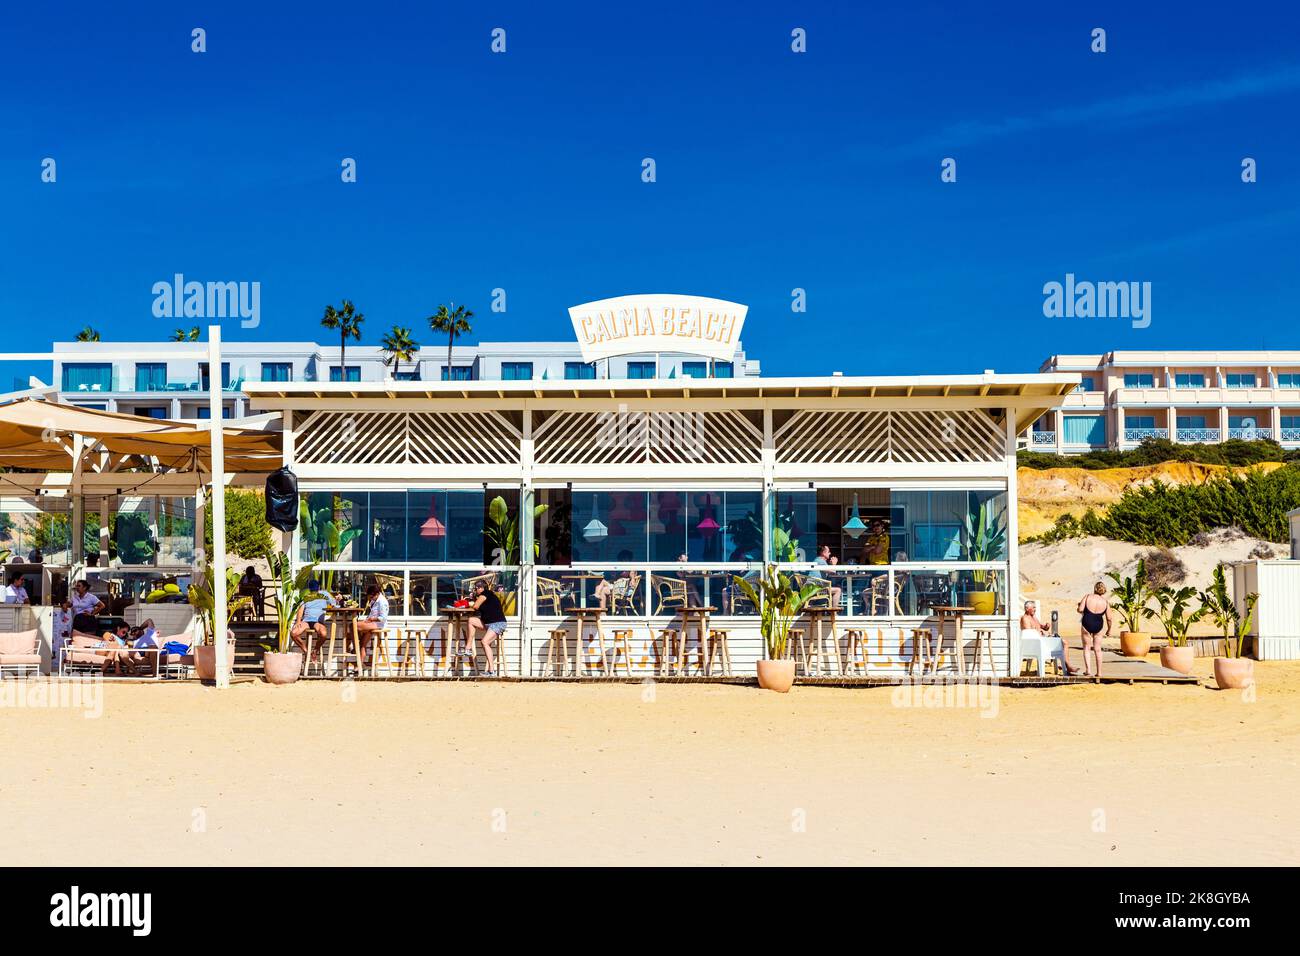 Restaurant Calma Beach sur Playa de la Barrosa, Cadix, Espagne Banque D'Images